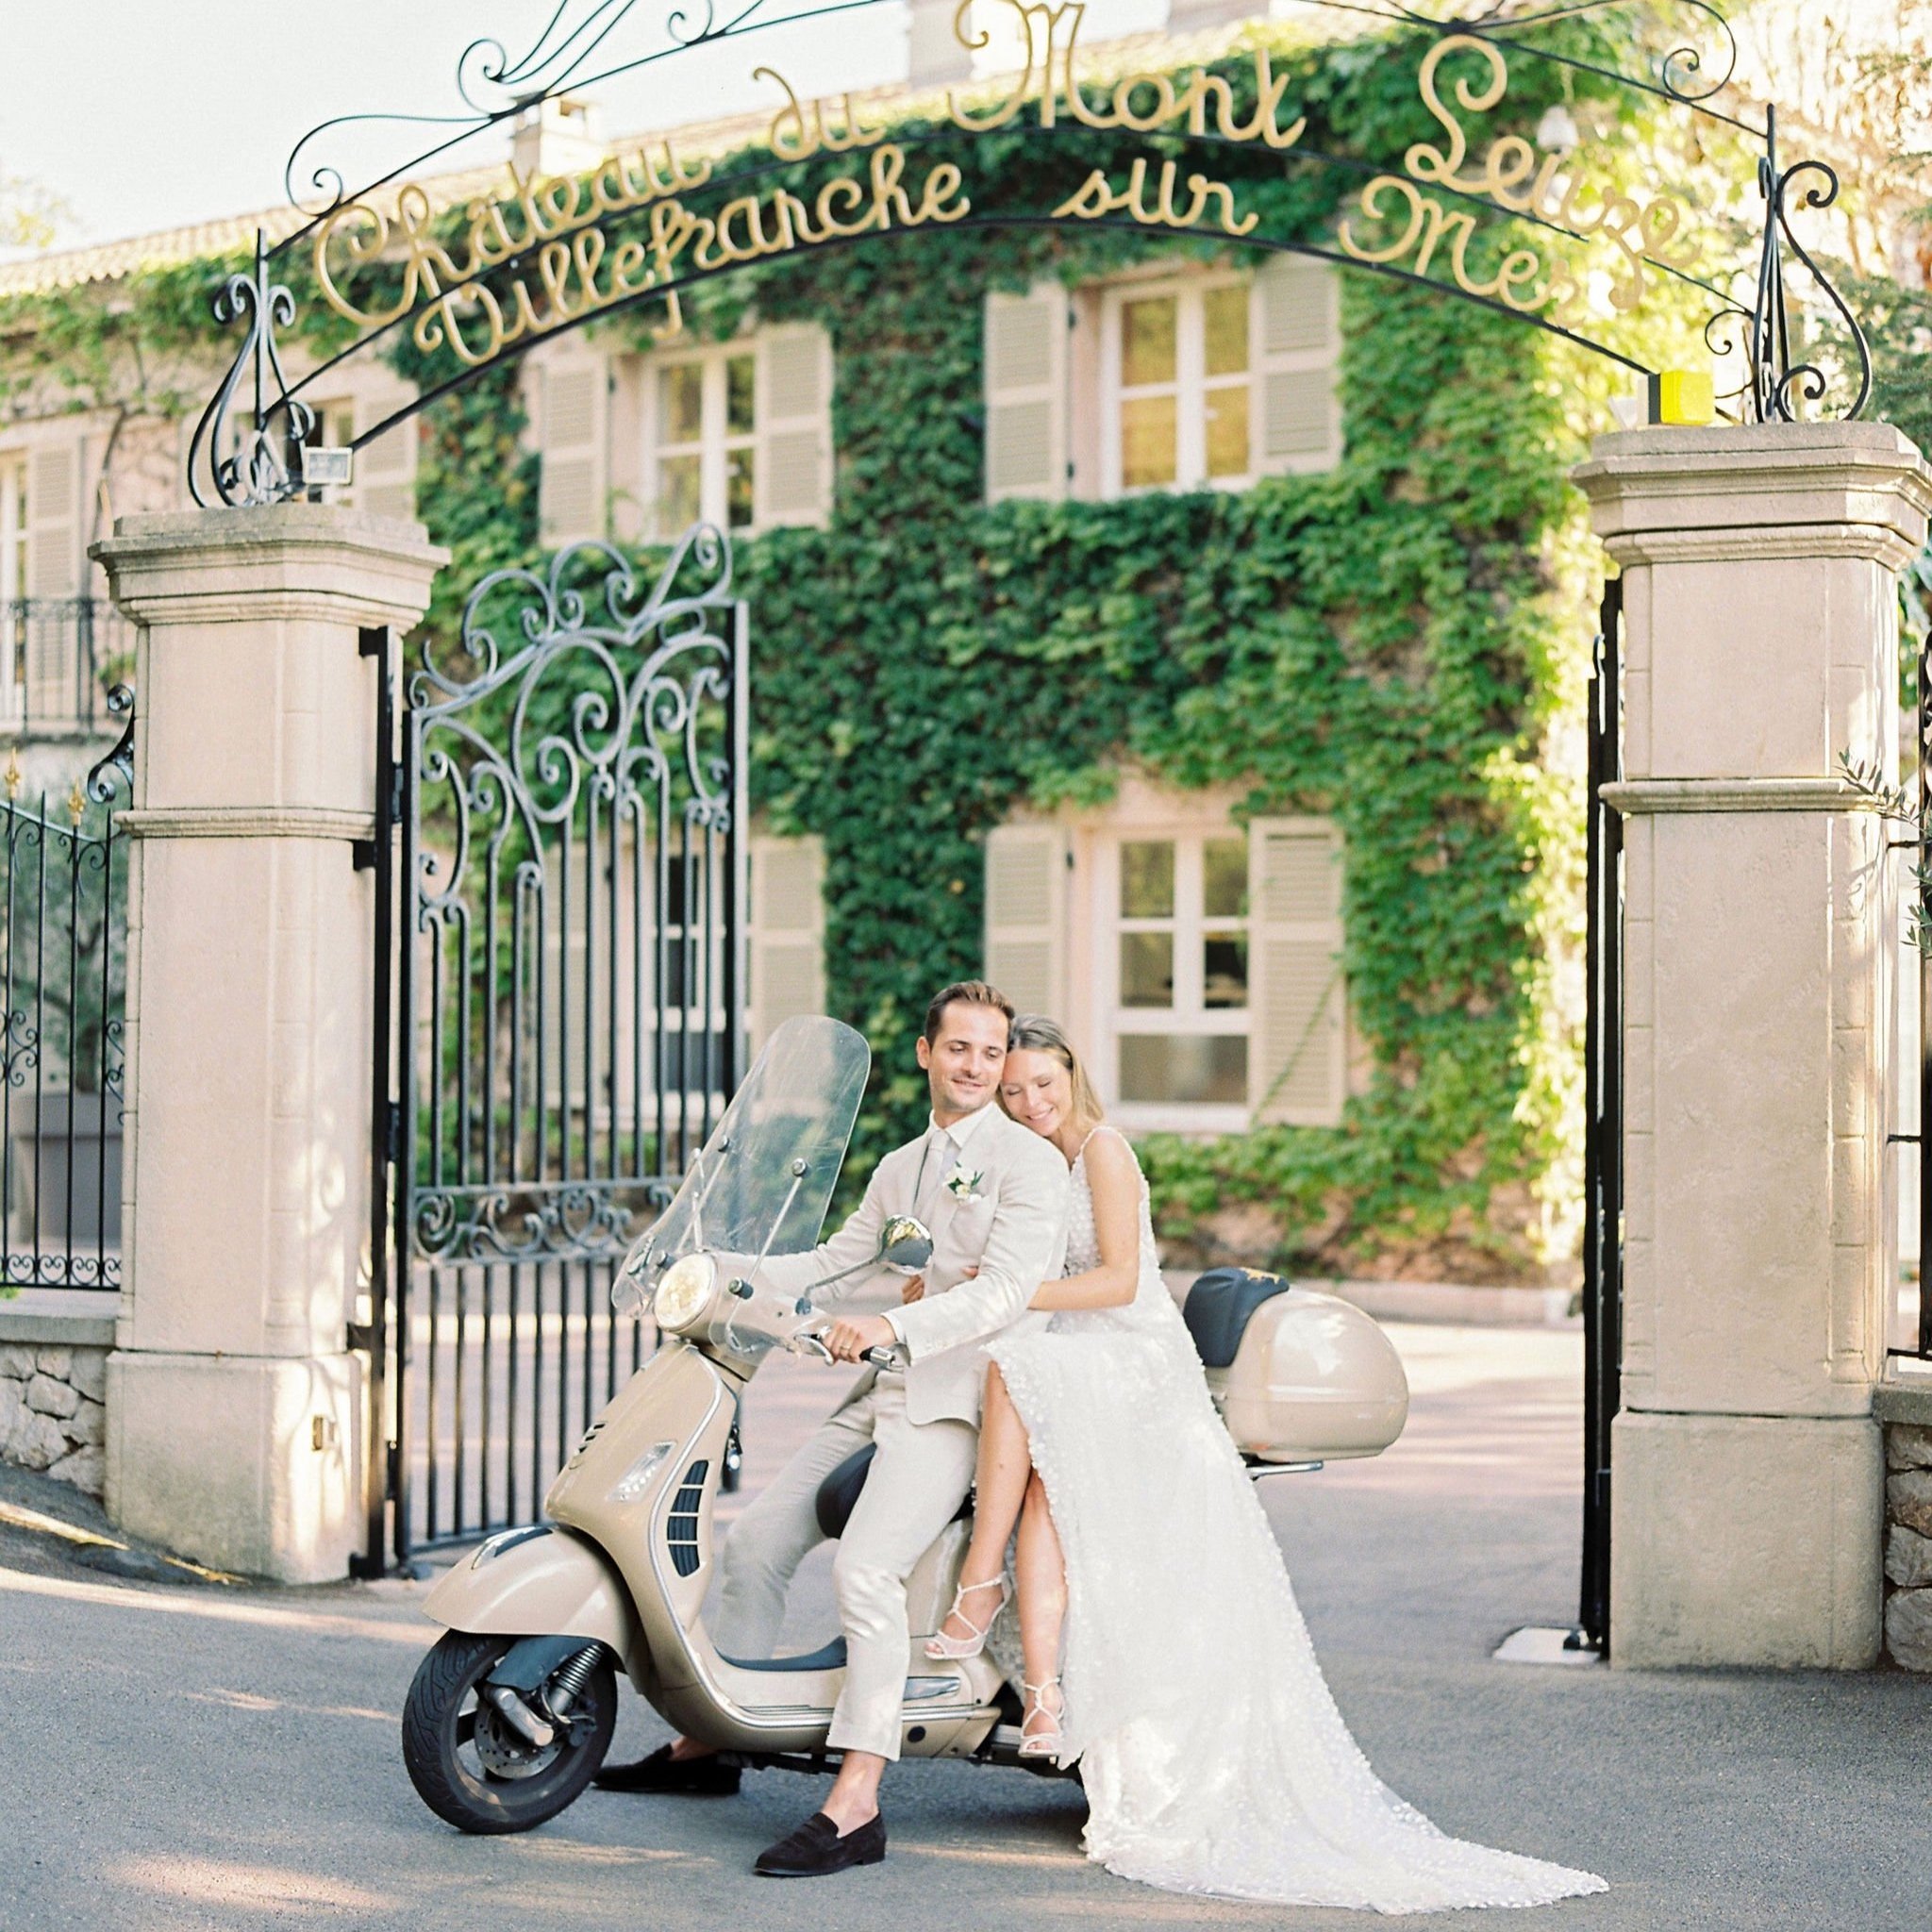 Wedding-transport-vespa-ride-French-Riviera-wedding-luxury-destination-wedding-planner.jpg